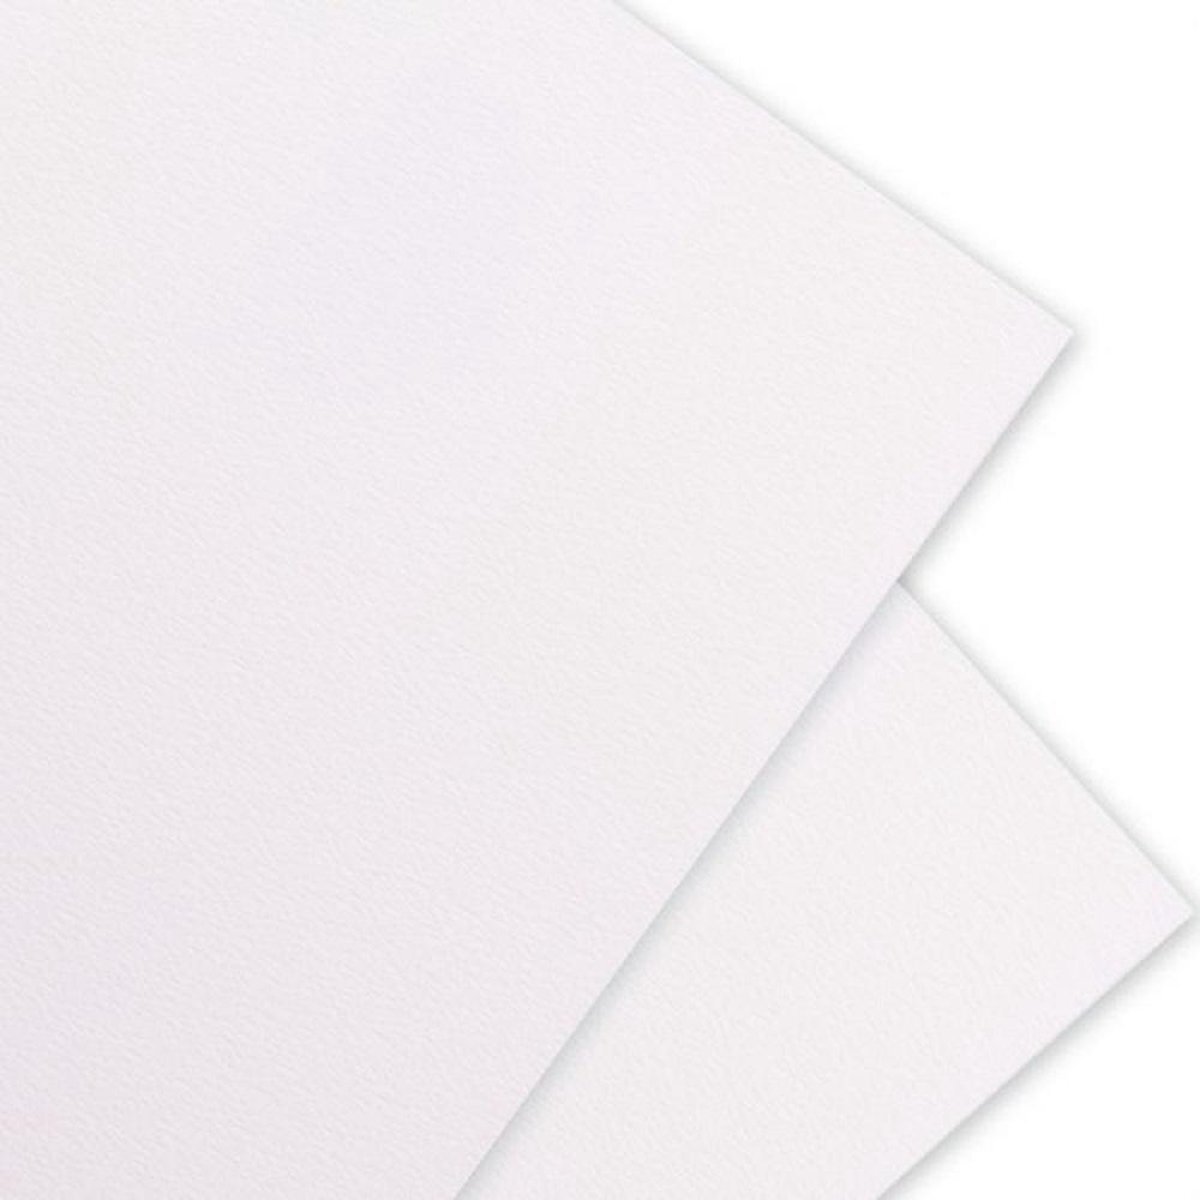 Florence Florence Aquarelpapier Pad A5, gebroken wit, 300 GSM, textuur oppervlak, kunstenaarskwaliteit, schetsboek met 24 vellen voor schilder-, handbelettering en kunstprojecten